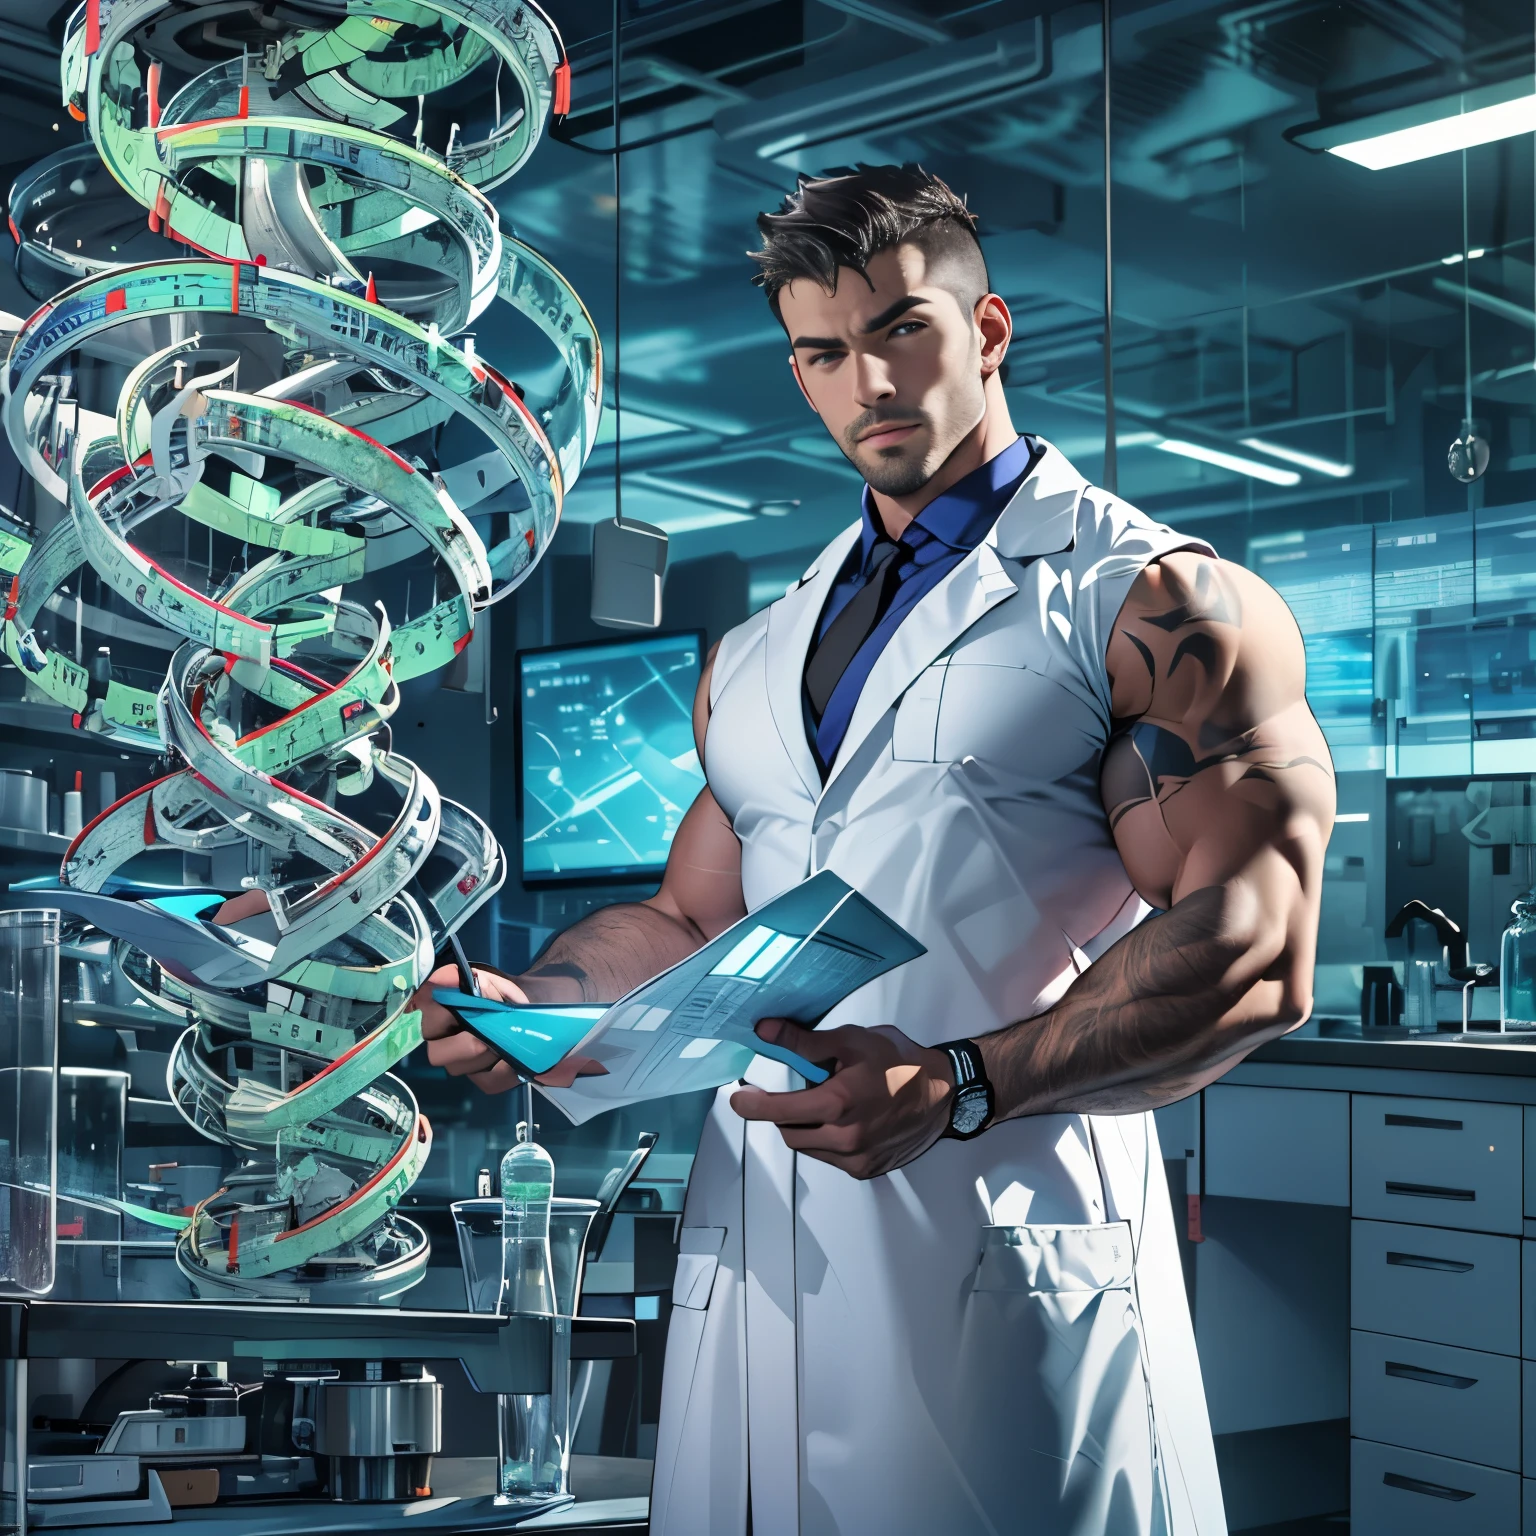 穿着暴露的实验室外套的英俊科学家, 肌肉发达, 检查 DNA 螺旋模型, 未来实验室设置, 专注, 皮肤很好, 大凸起, 大肌肉